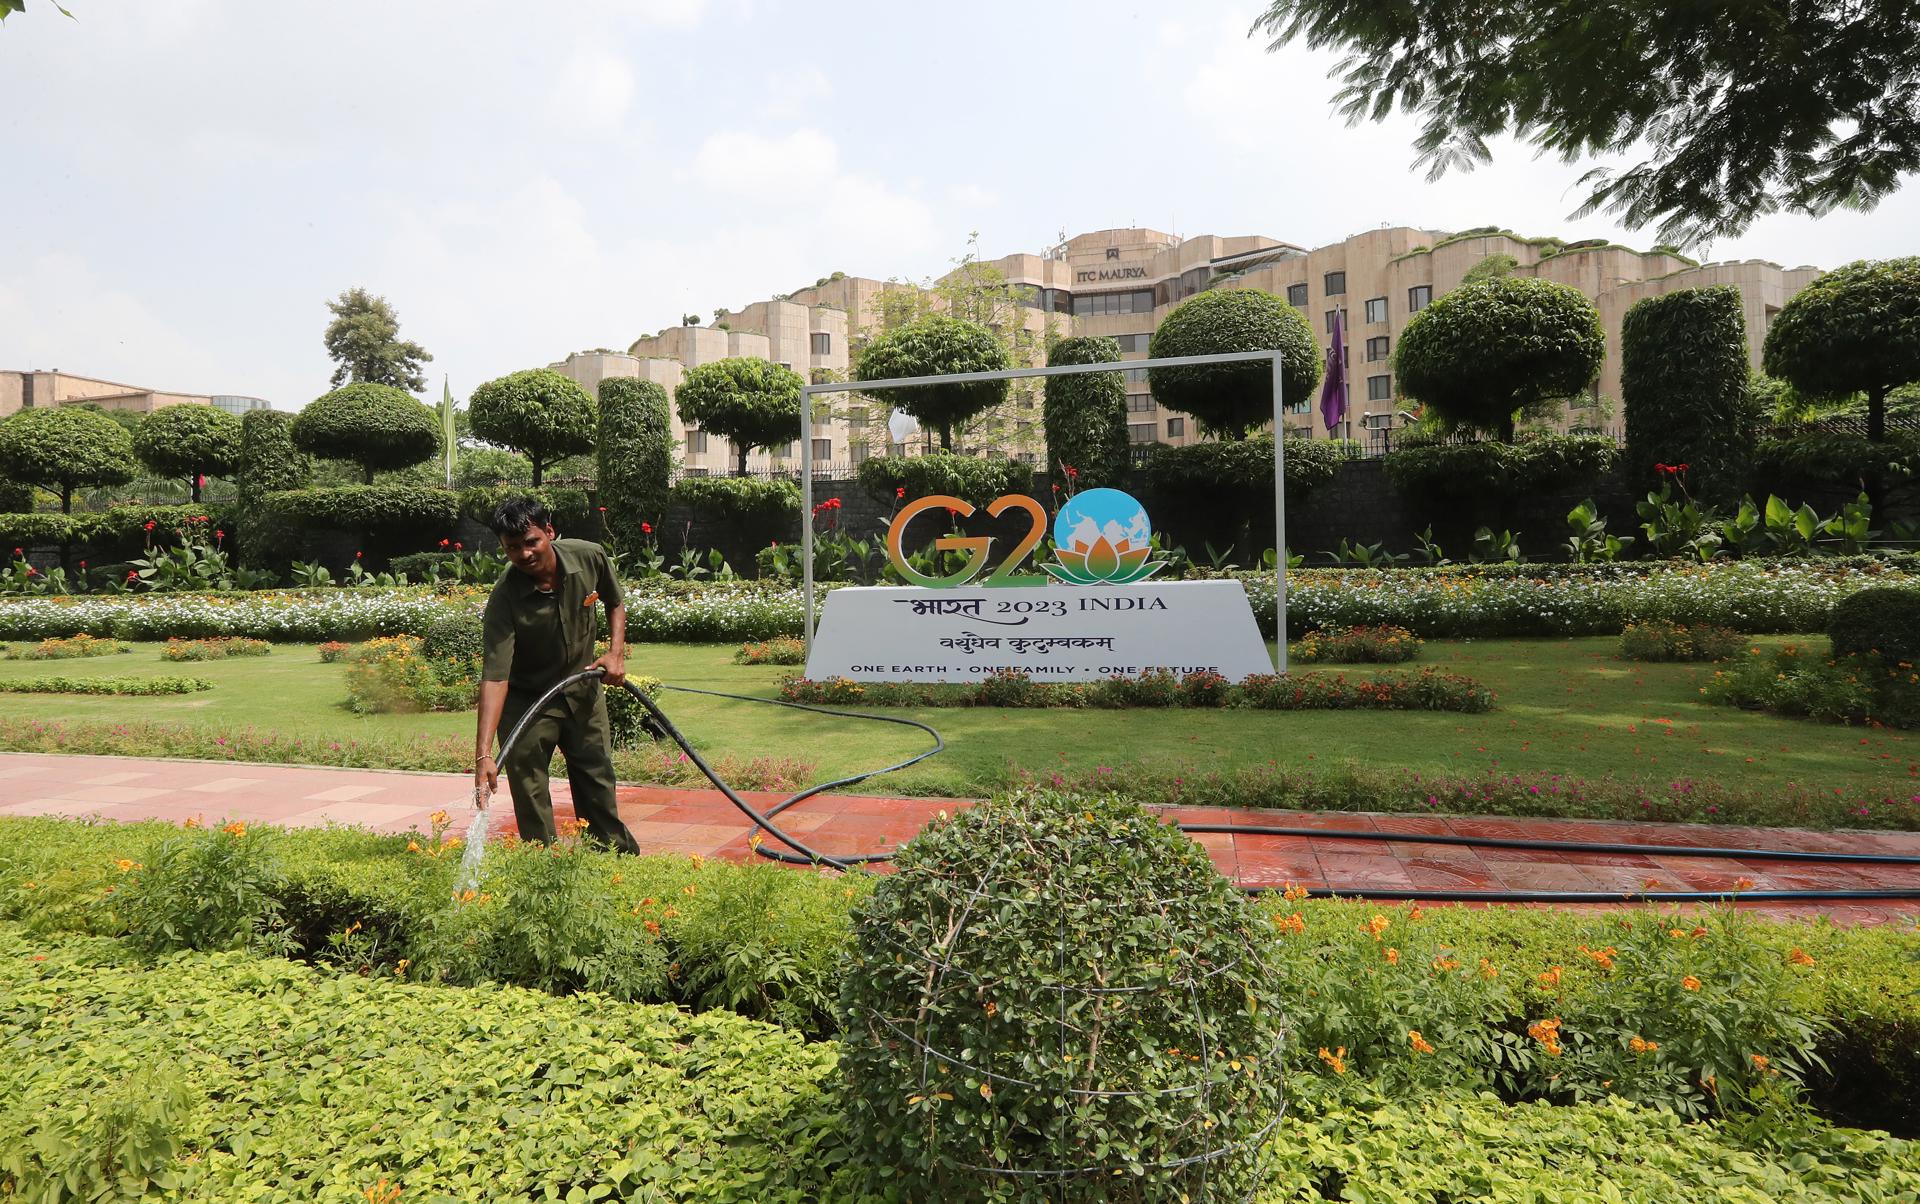 ITC Maurya hotel ahead of G20 Summit in Delhi, India, 31 August 2023. EFE-EPA/HARISH TYAGI
